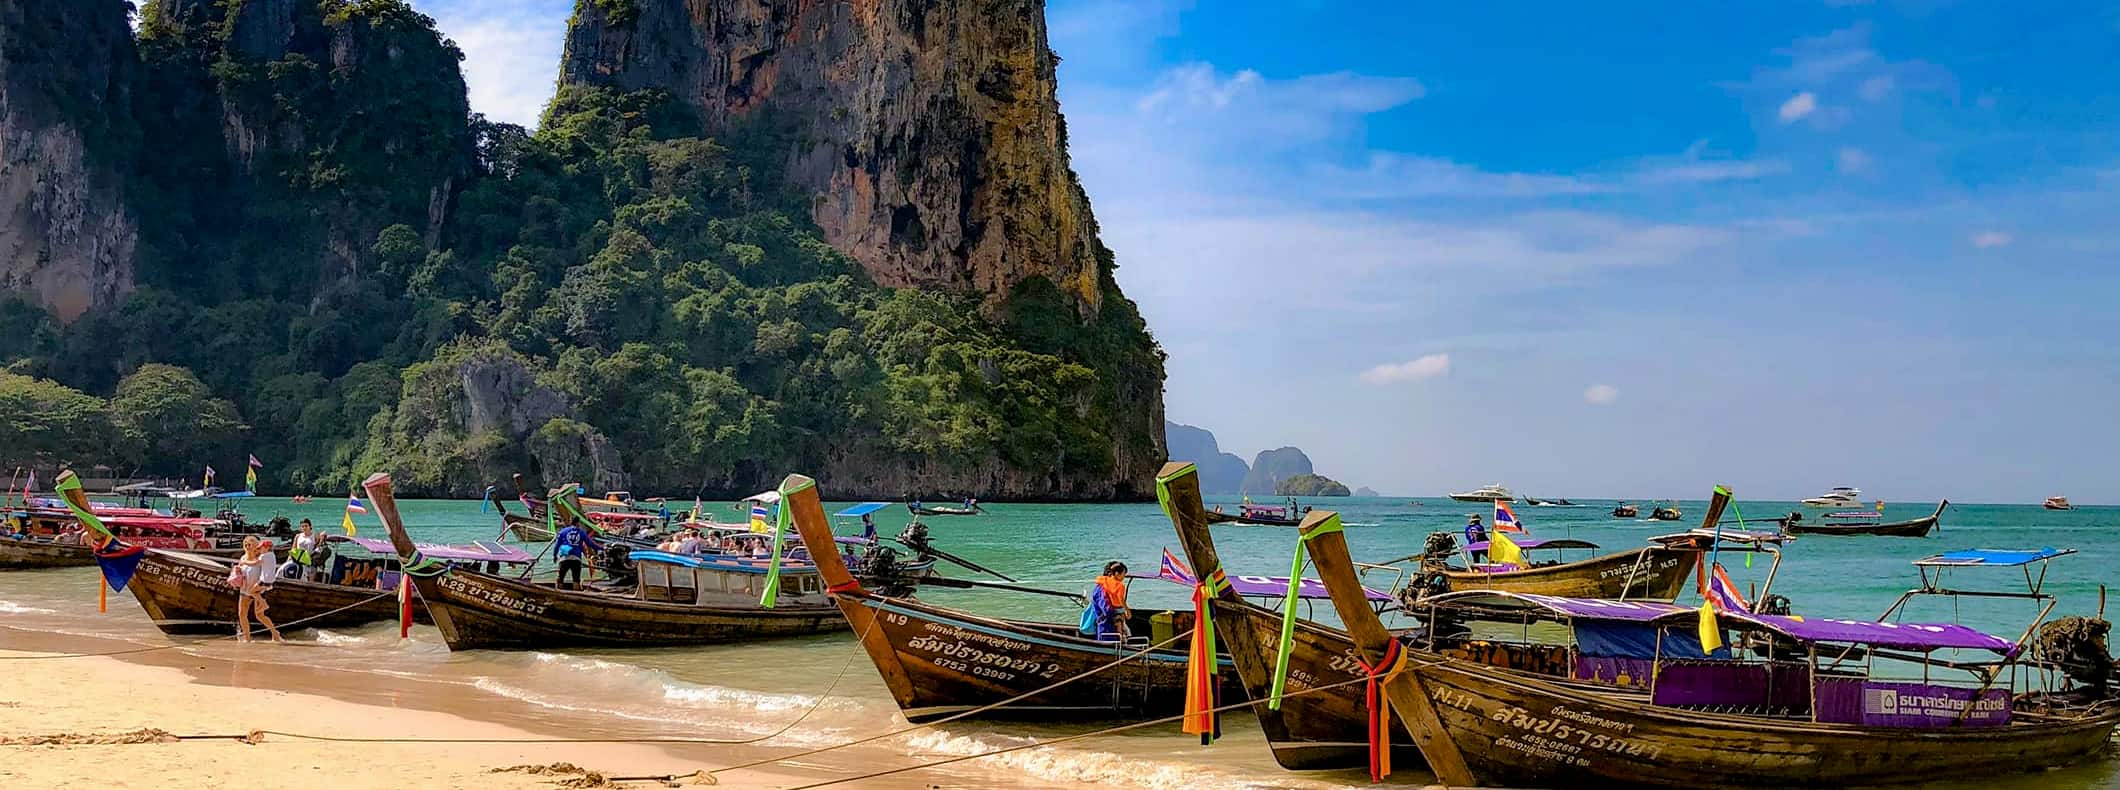 一排长尾船停在泰国美丽的海滩上